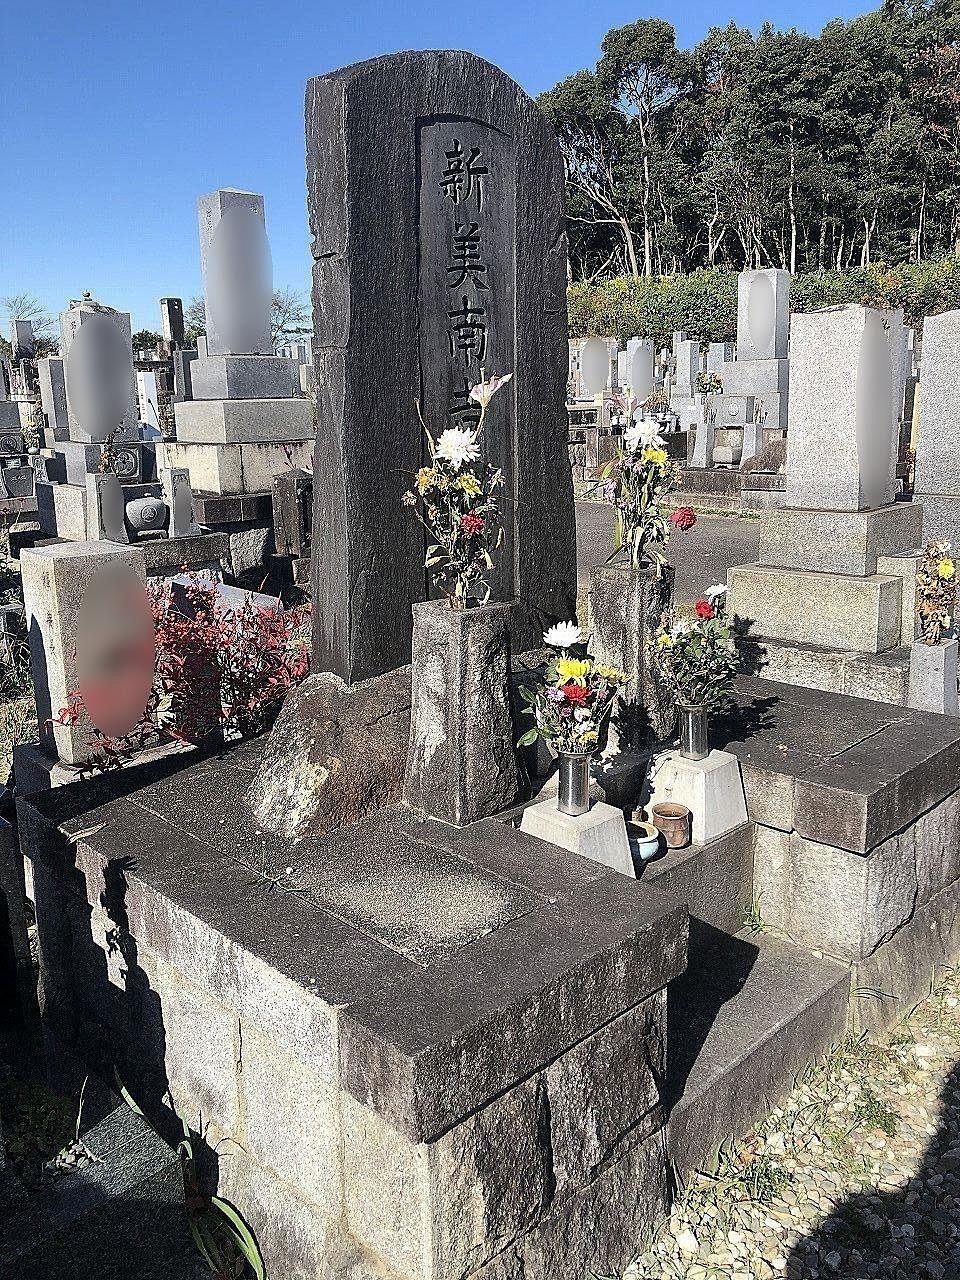 児童文学者新美南吉の墓は昭和35年に半田市柊町にある北谷墓地に建てられました。